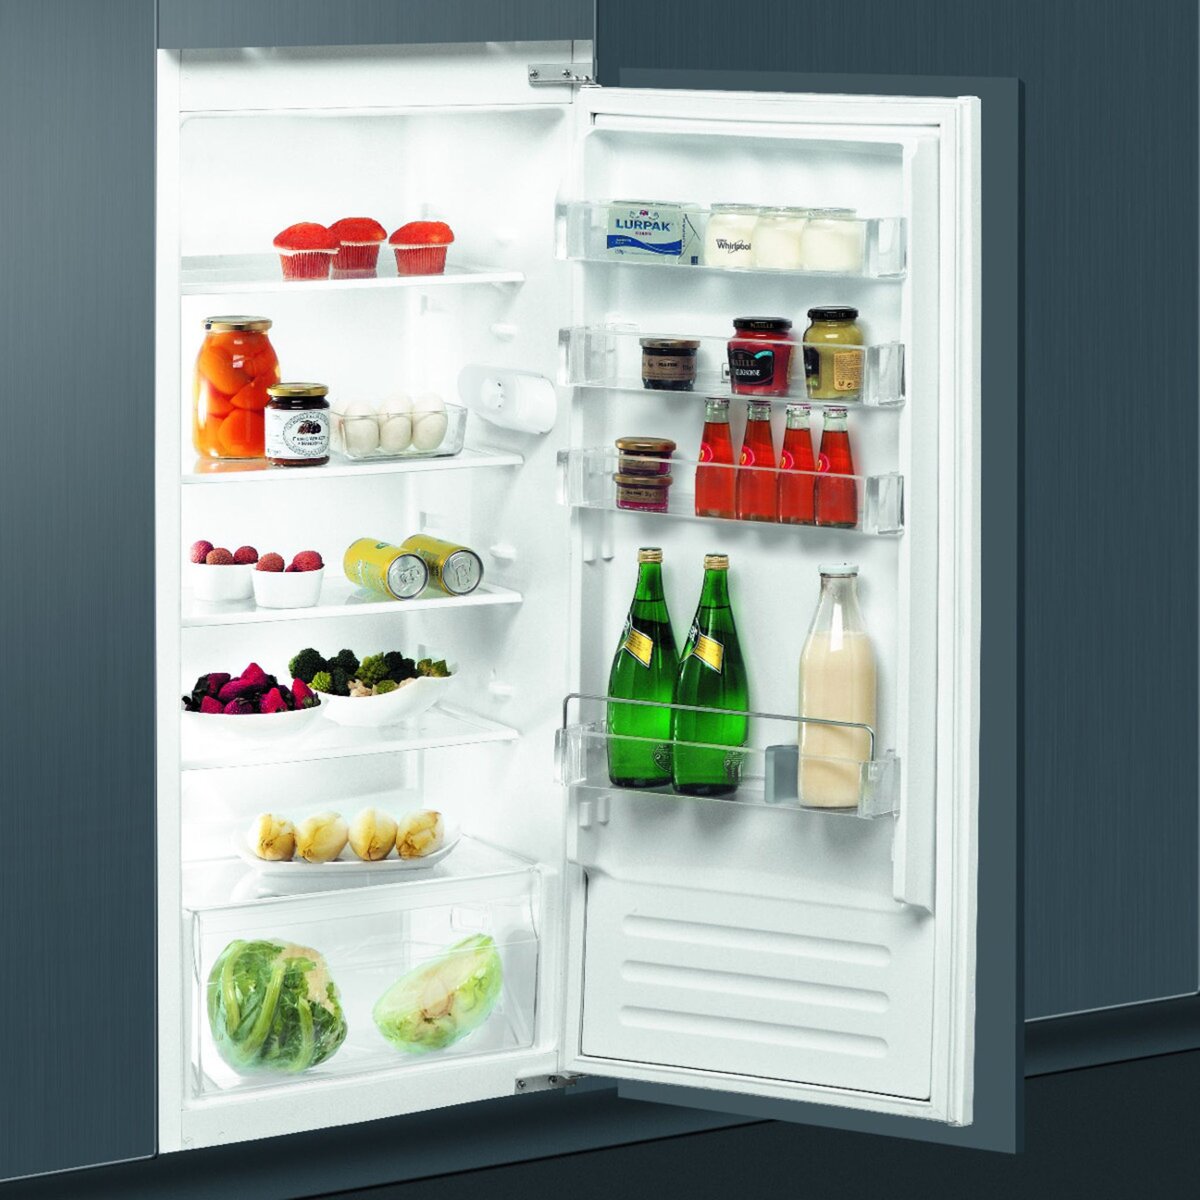 WHIRLPOOL Réfrigérateur armoire ARG750/A+, 122 L, Froid Statique